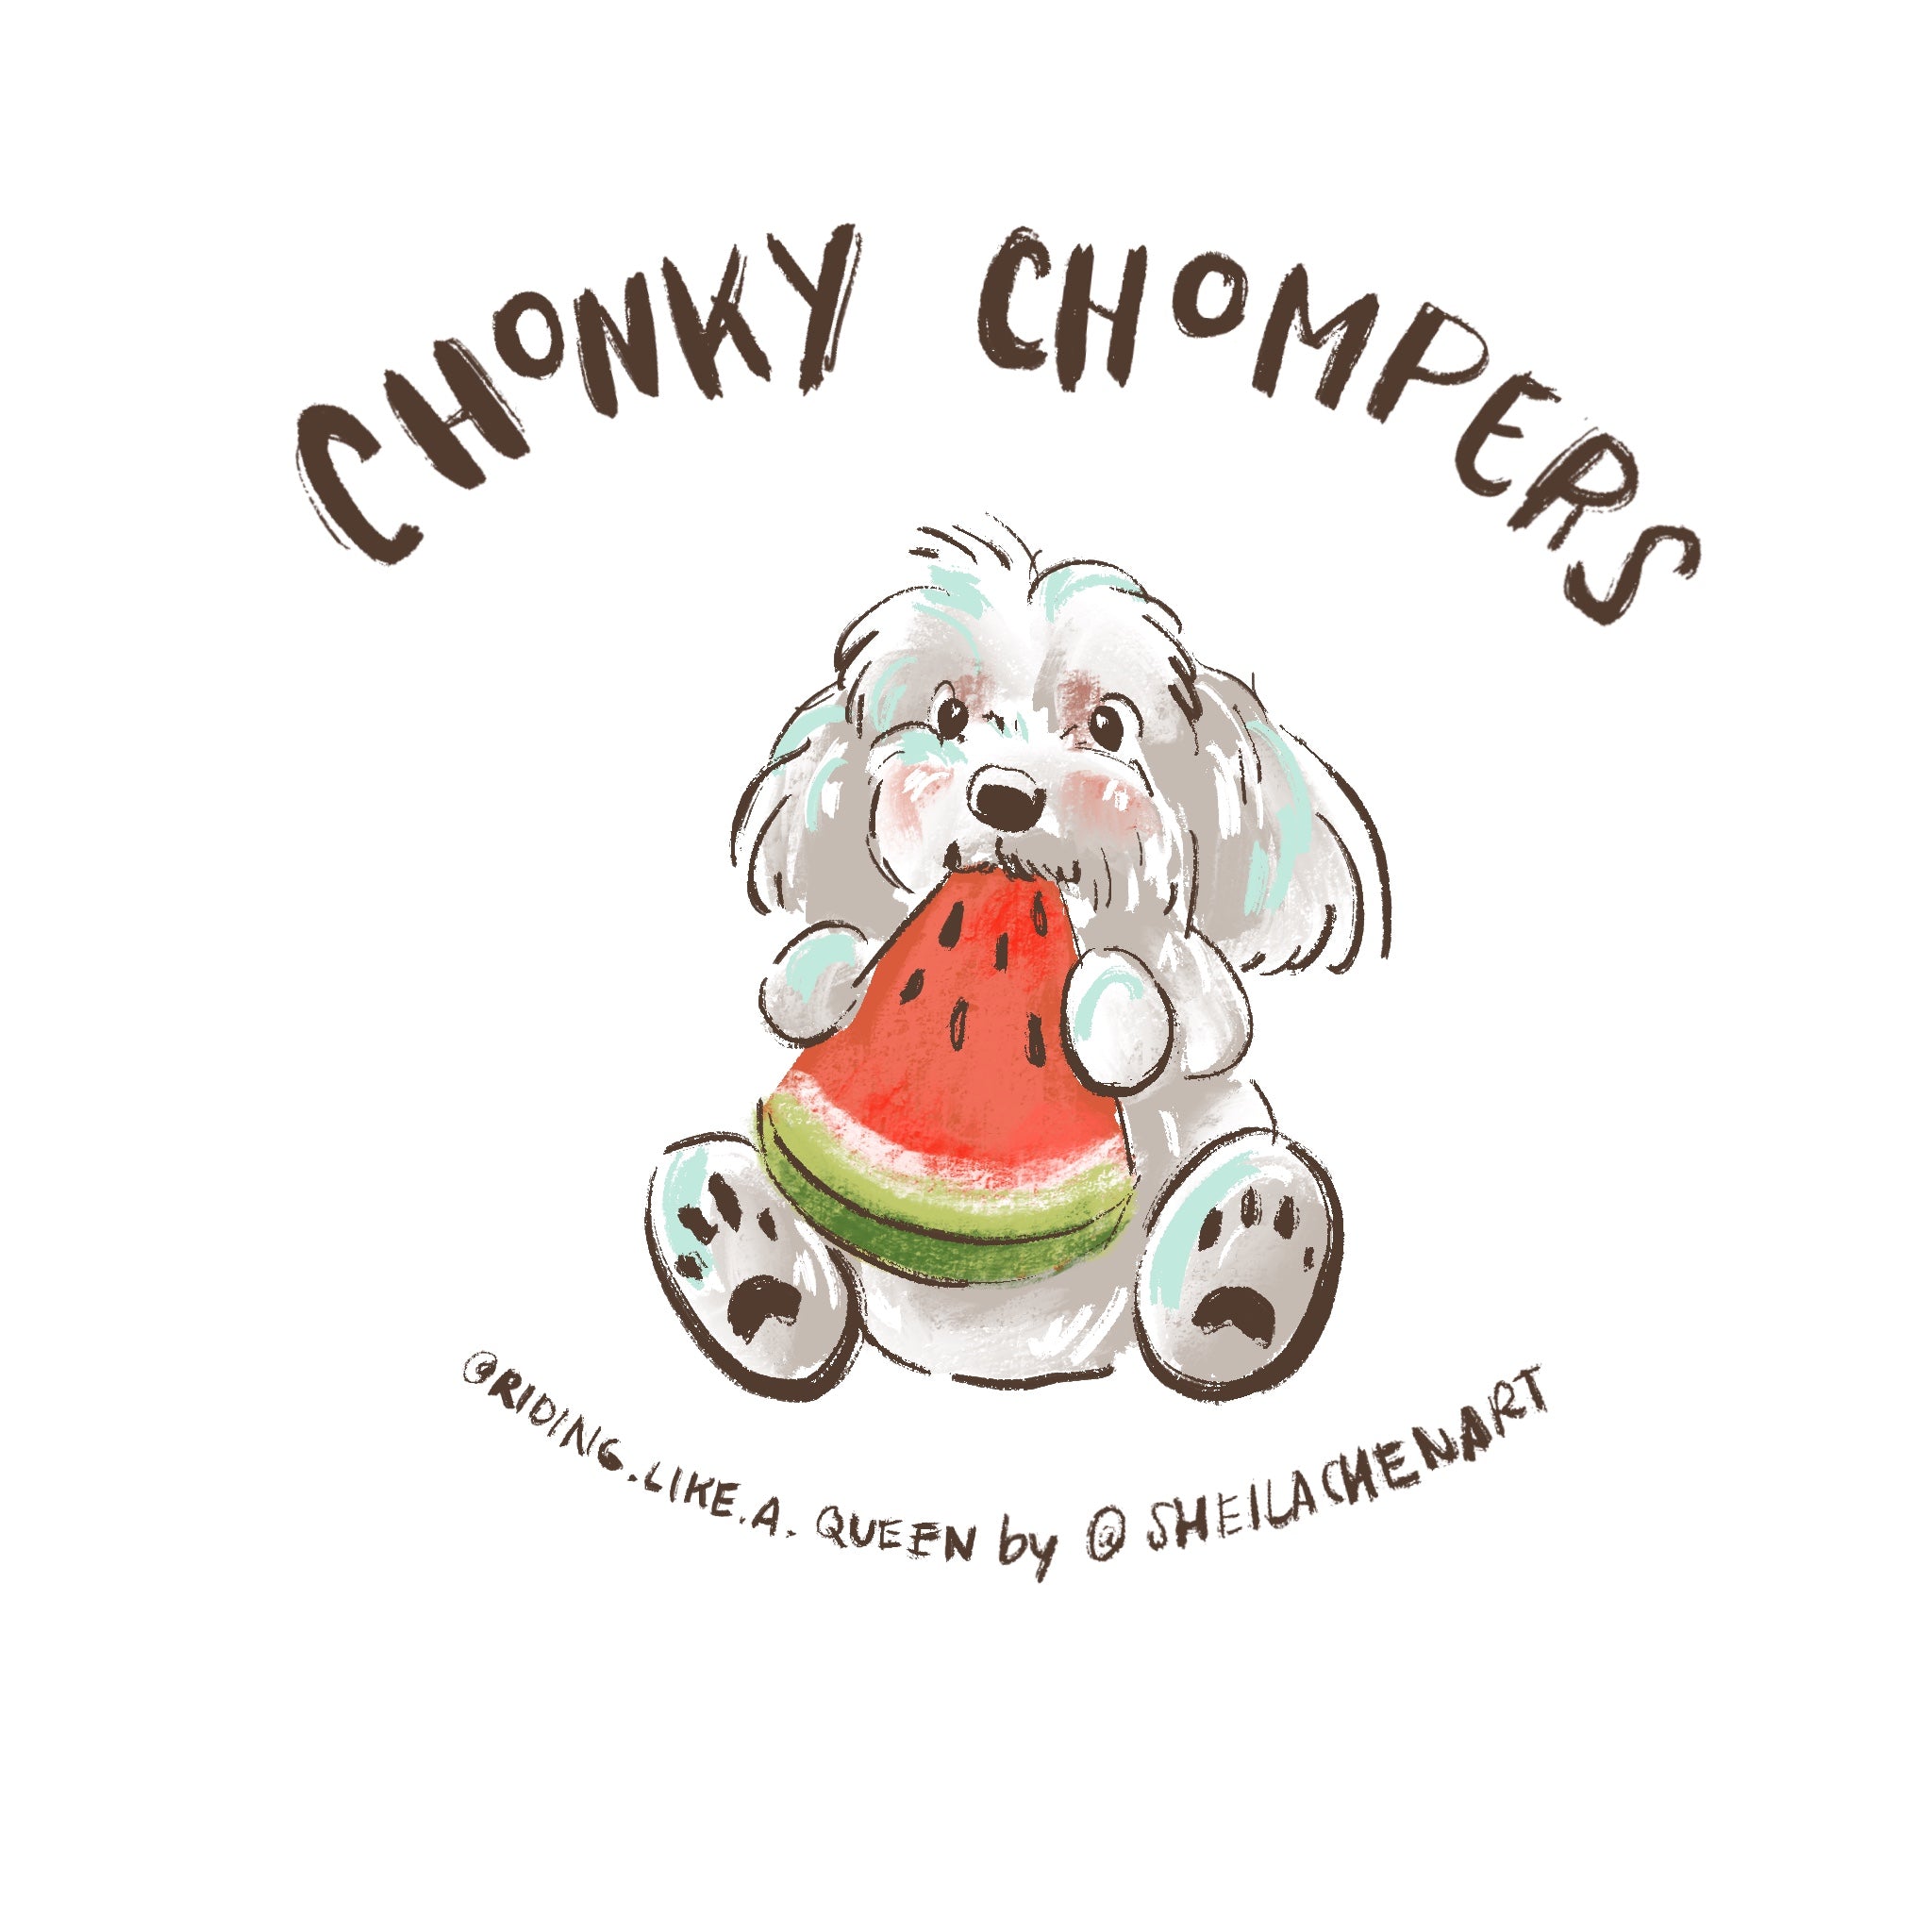 Chonky Chompers Digital